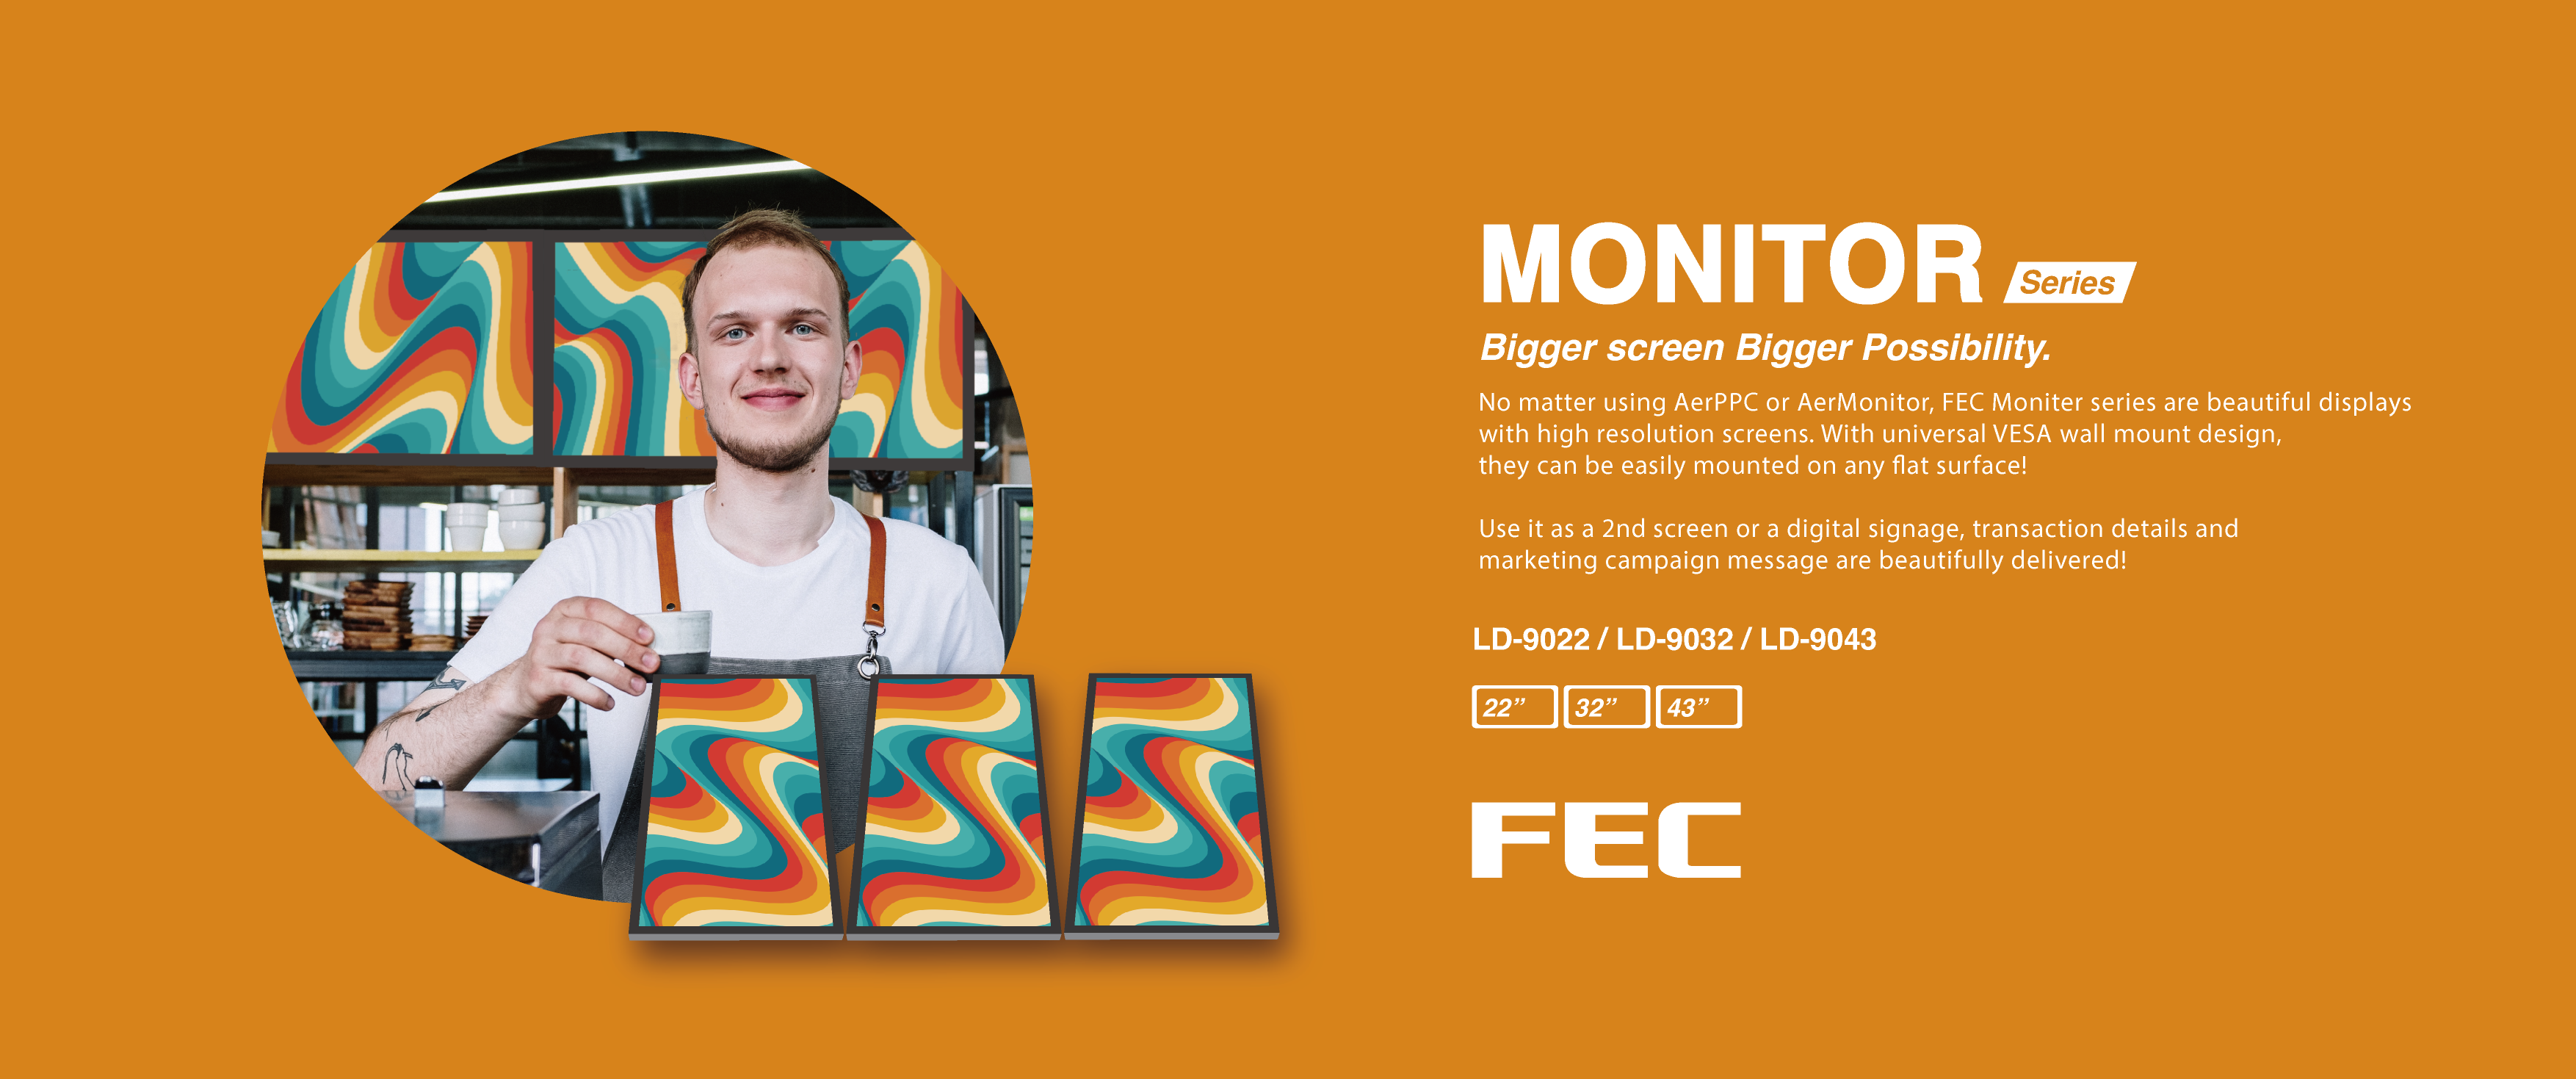 FEC Monitor: Bigger Screen, Bigger Possiblility